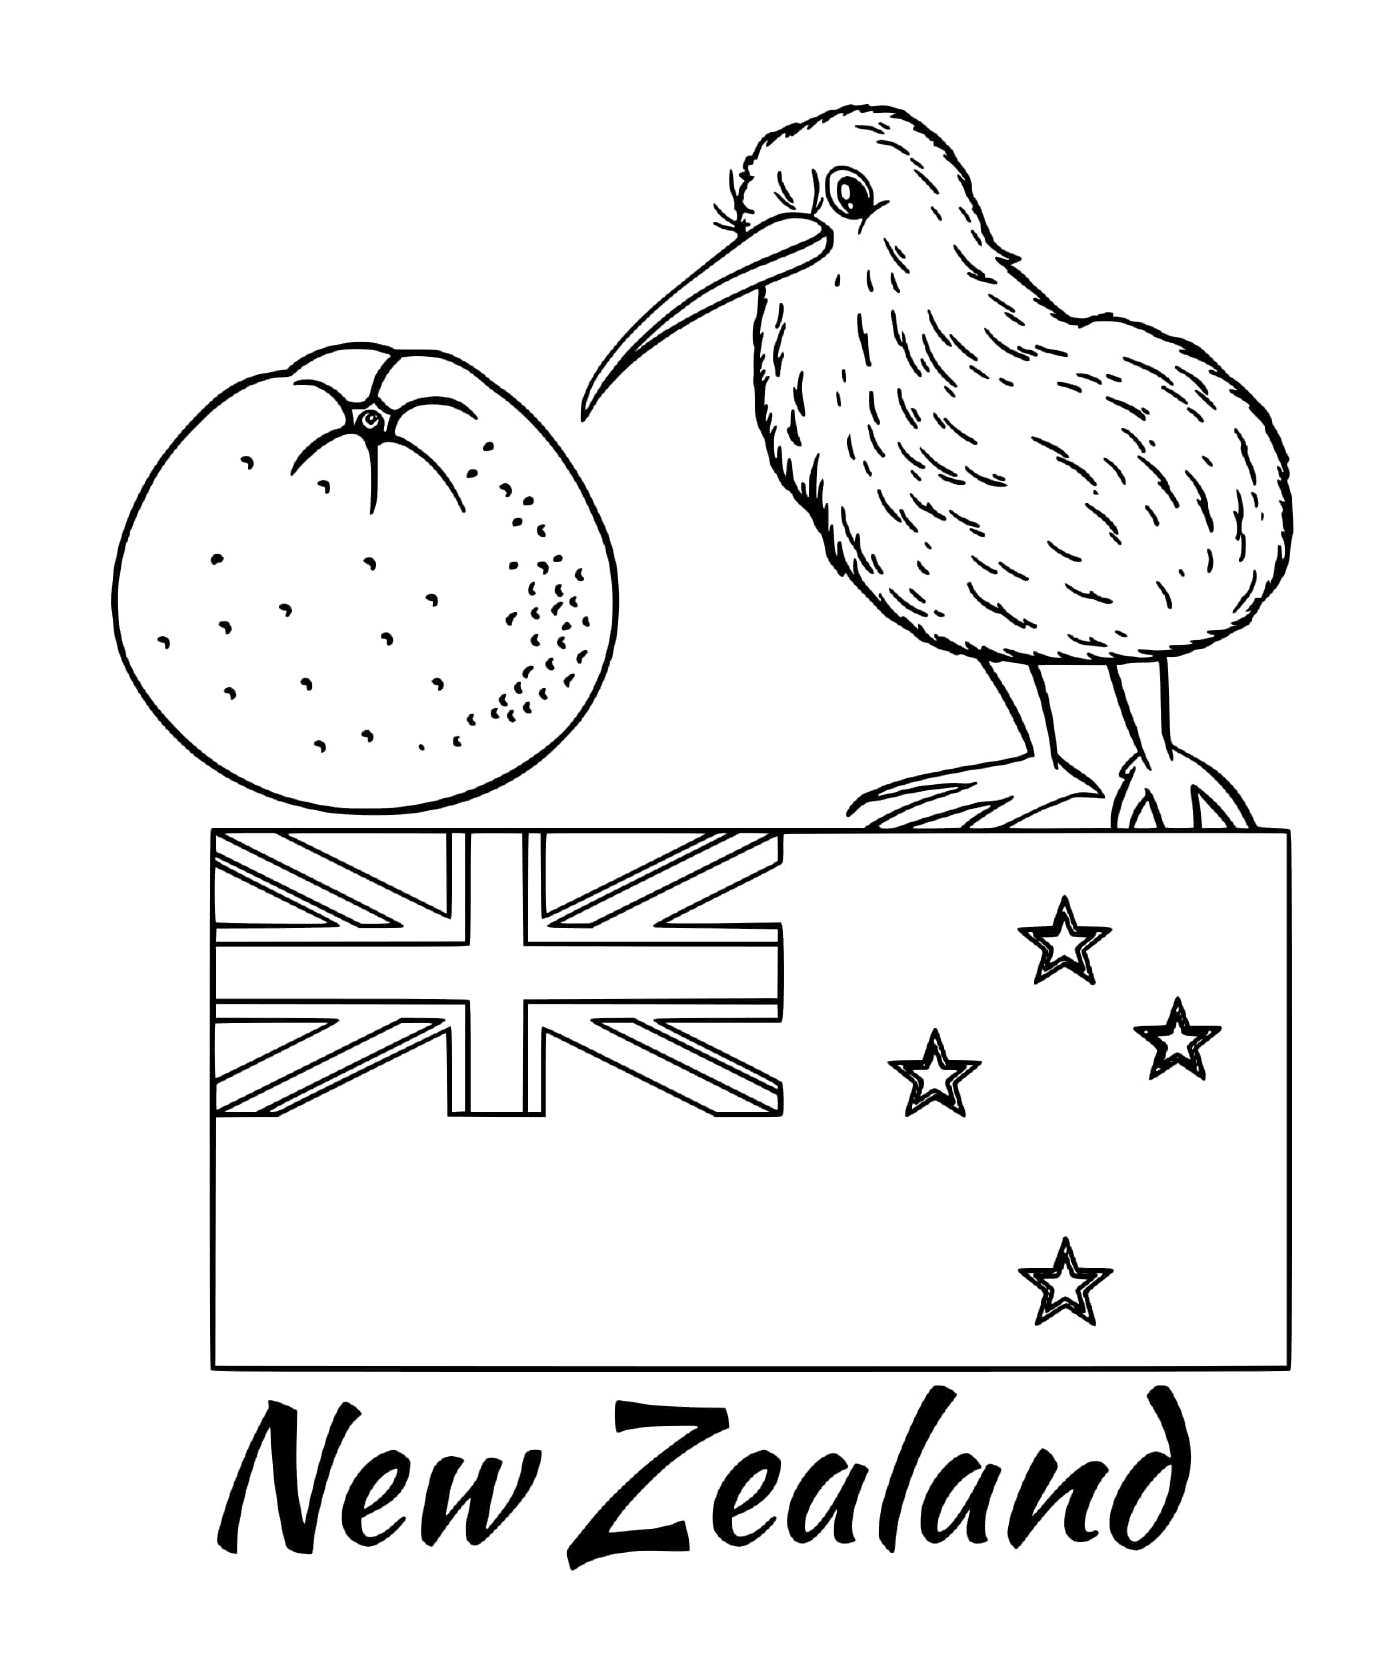  Bandiera della Nuova Zelanda, kiwi 